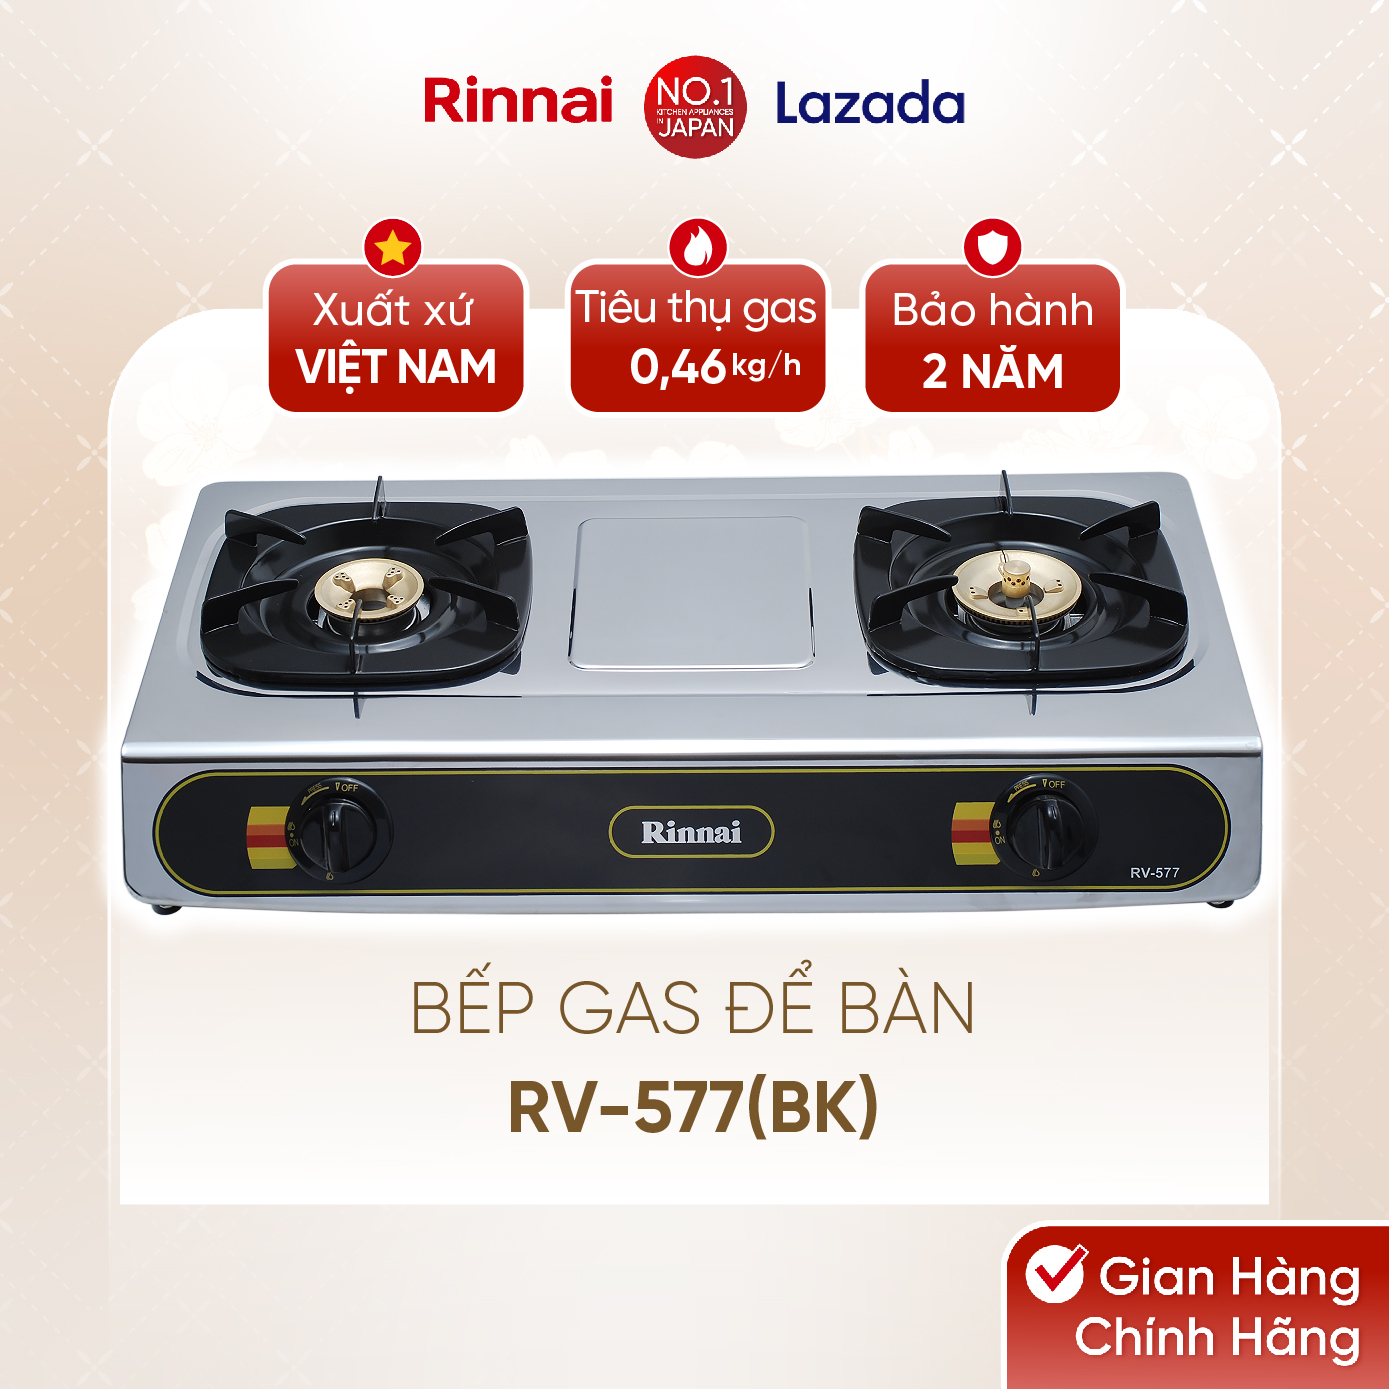 Bếp gas dương Rinnai RV-577(BK) mặt bếp inox và kiềng bếp men - Hàng chính hãng.